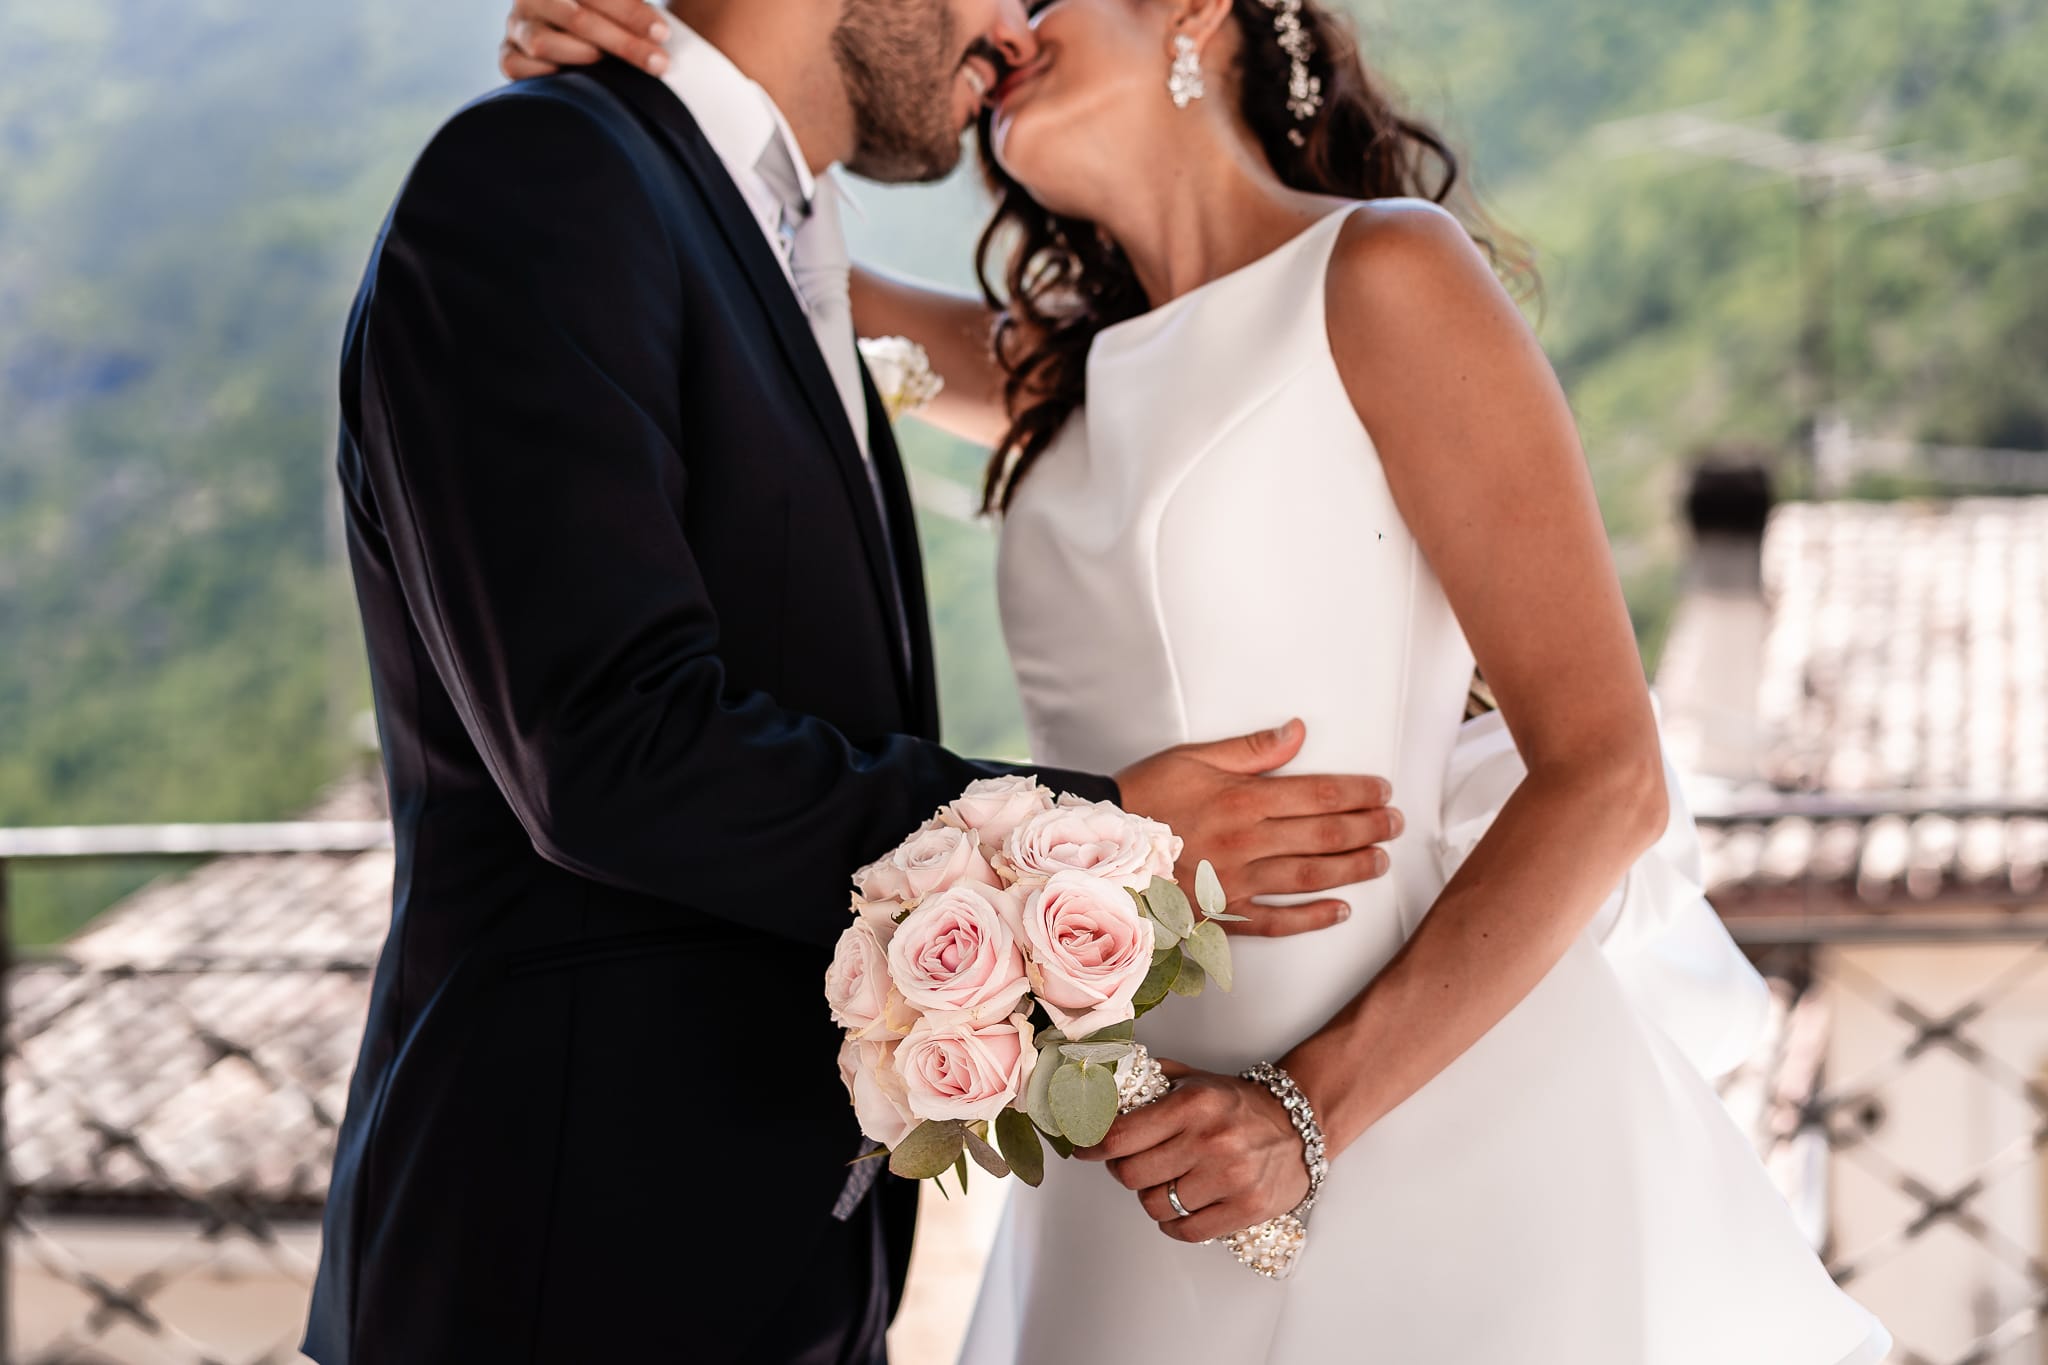 Tania Matteo Matrimonio a Sulmona in Abruzzo ritratti sposi pettorano sul gizio